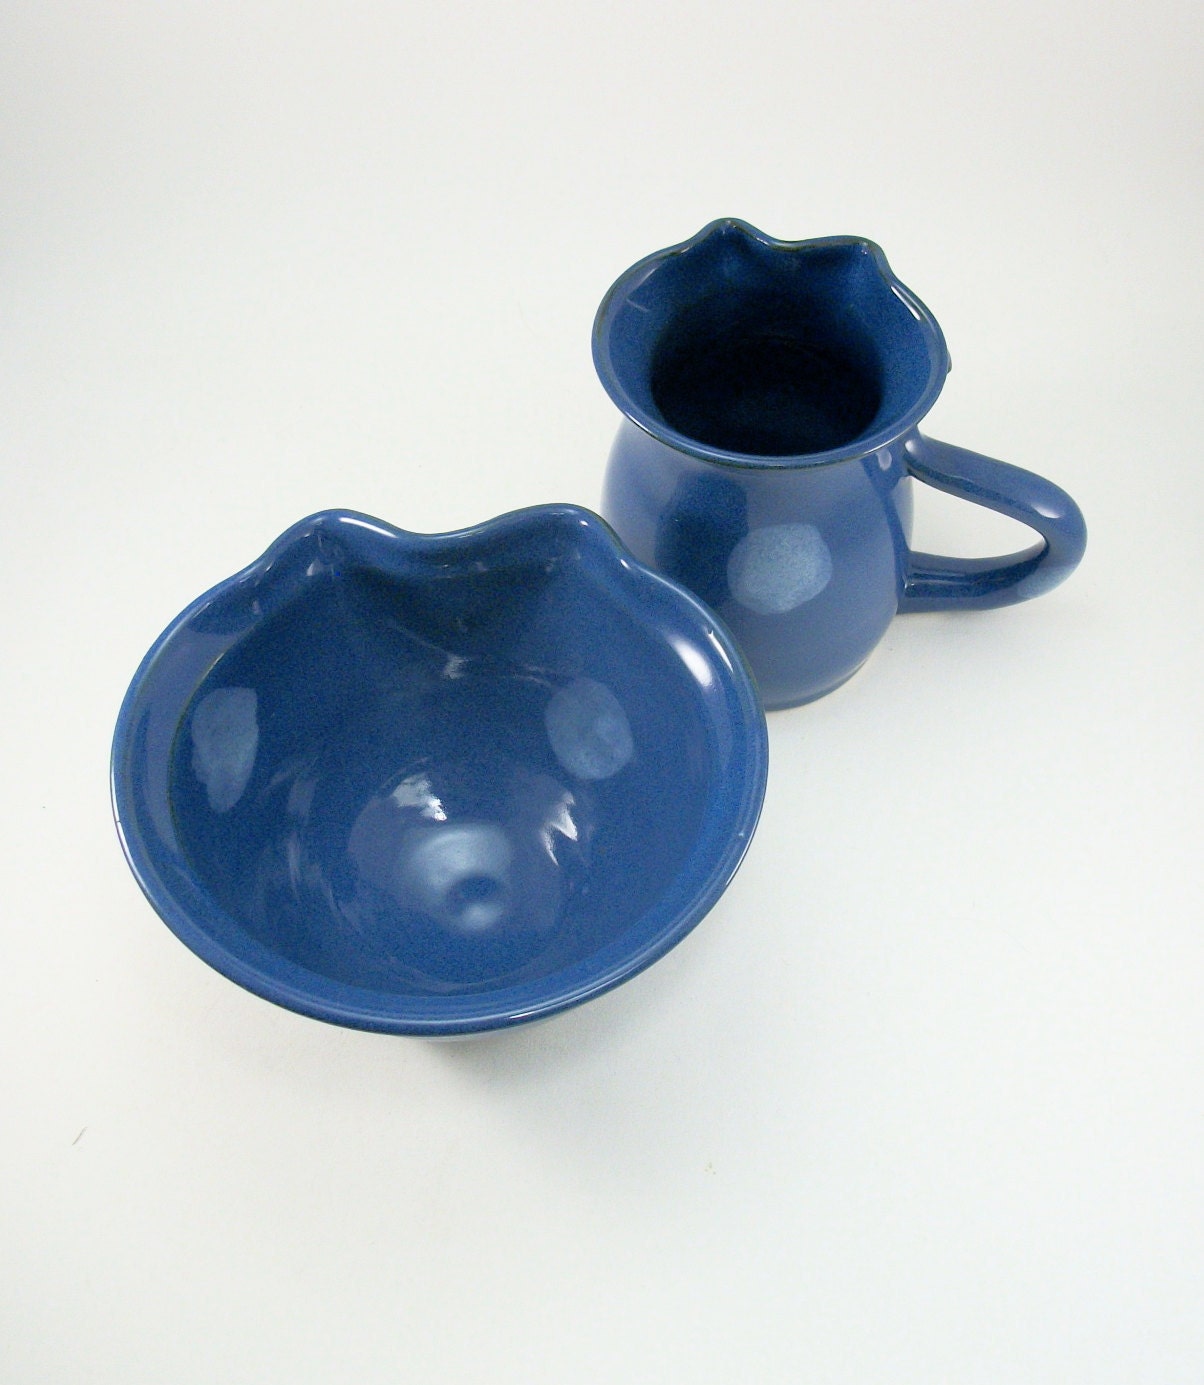 bowl and mug set shaped like a cat